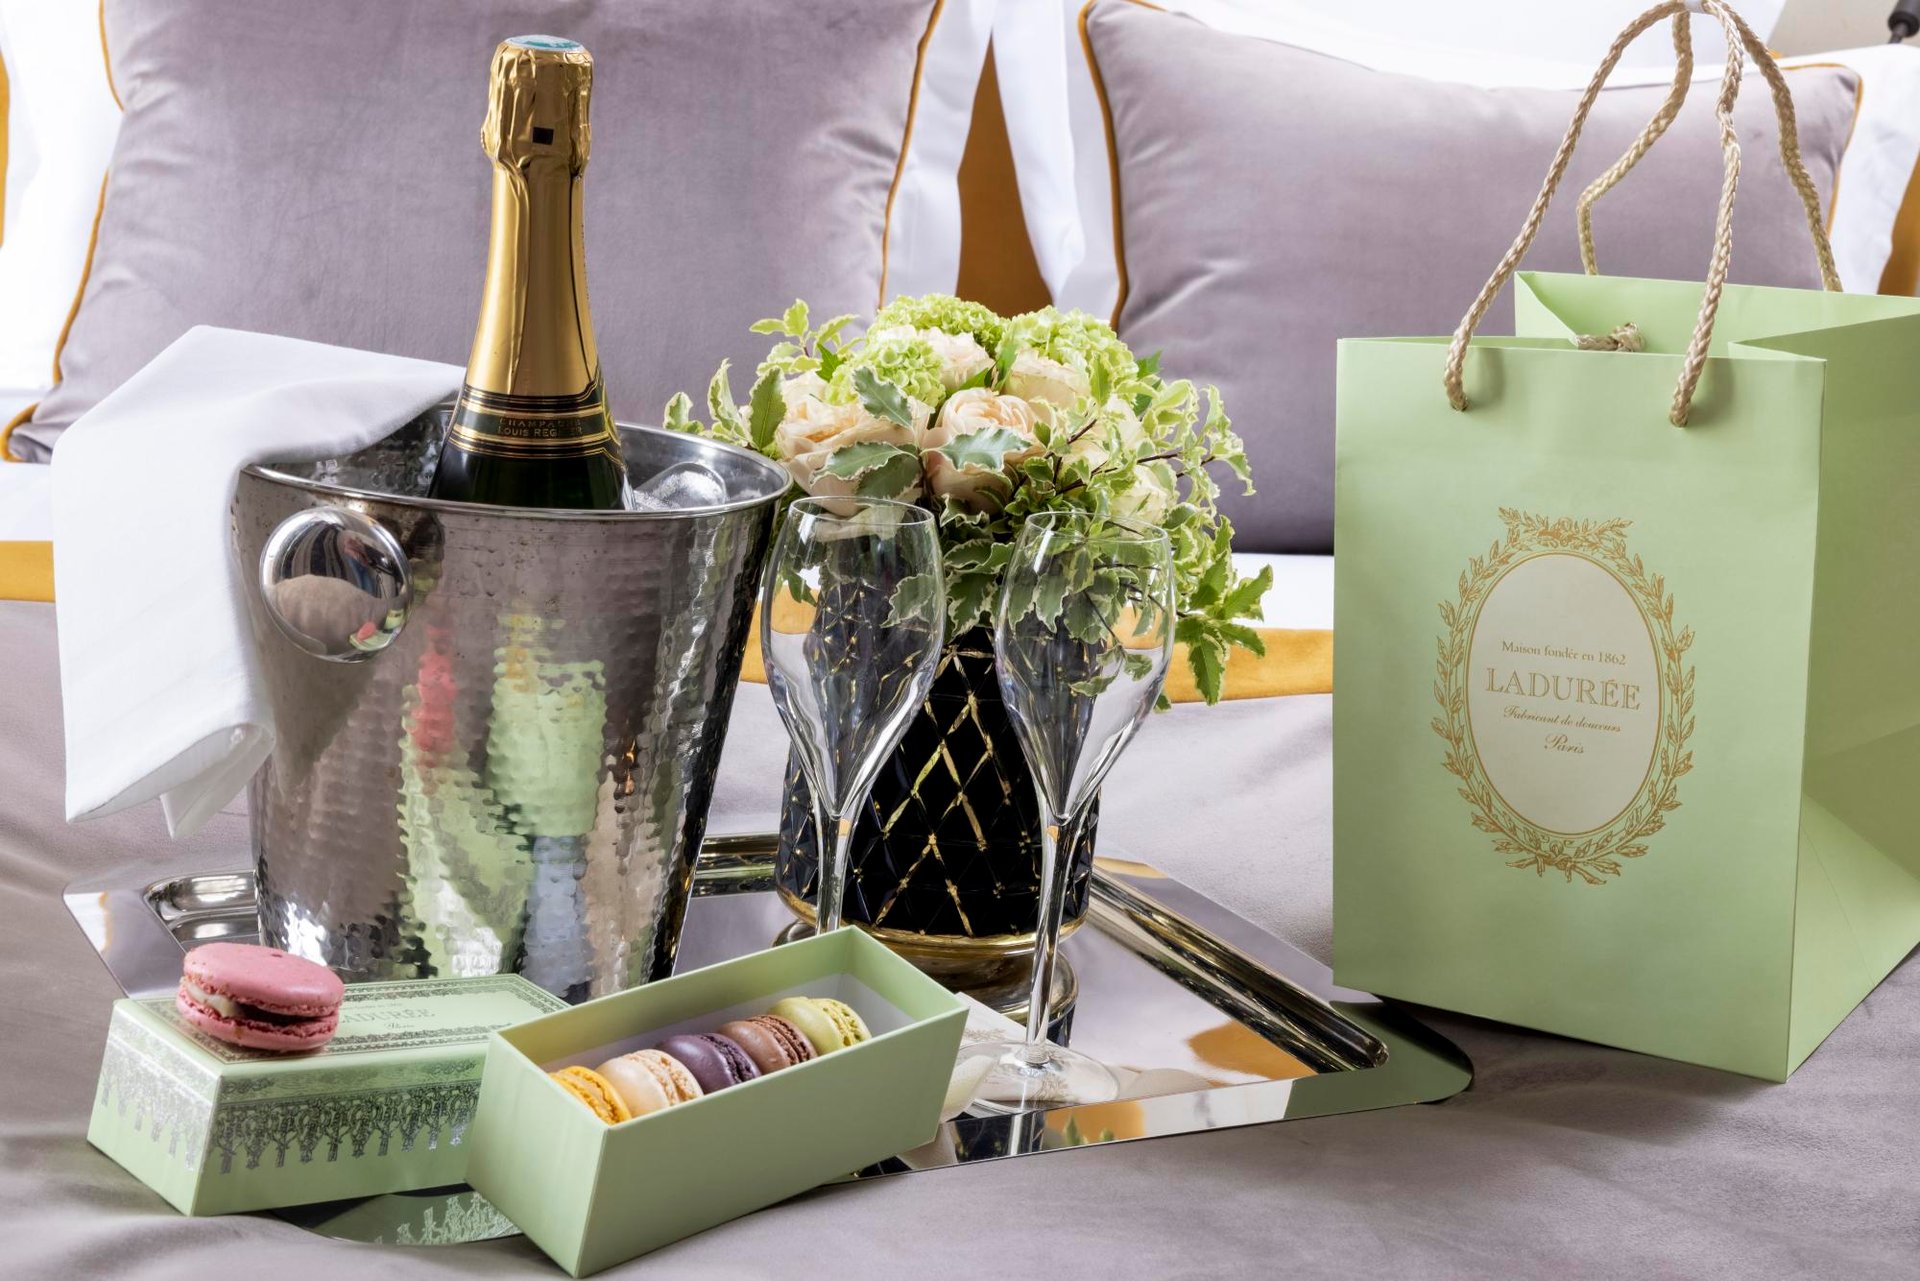 Hôtel Vinci Due Offre Package Romantique Champagne Macarons